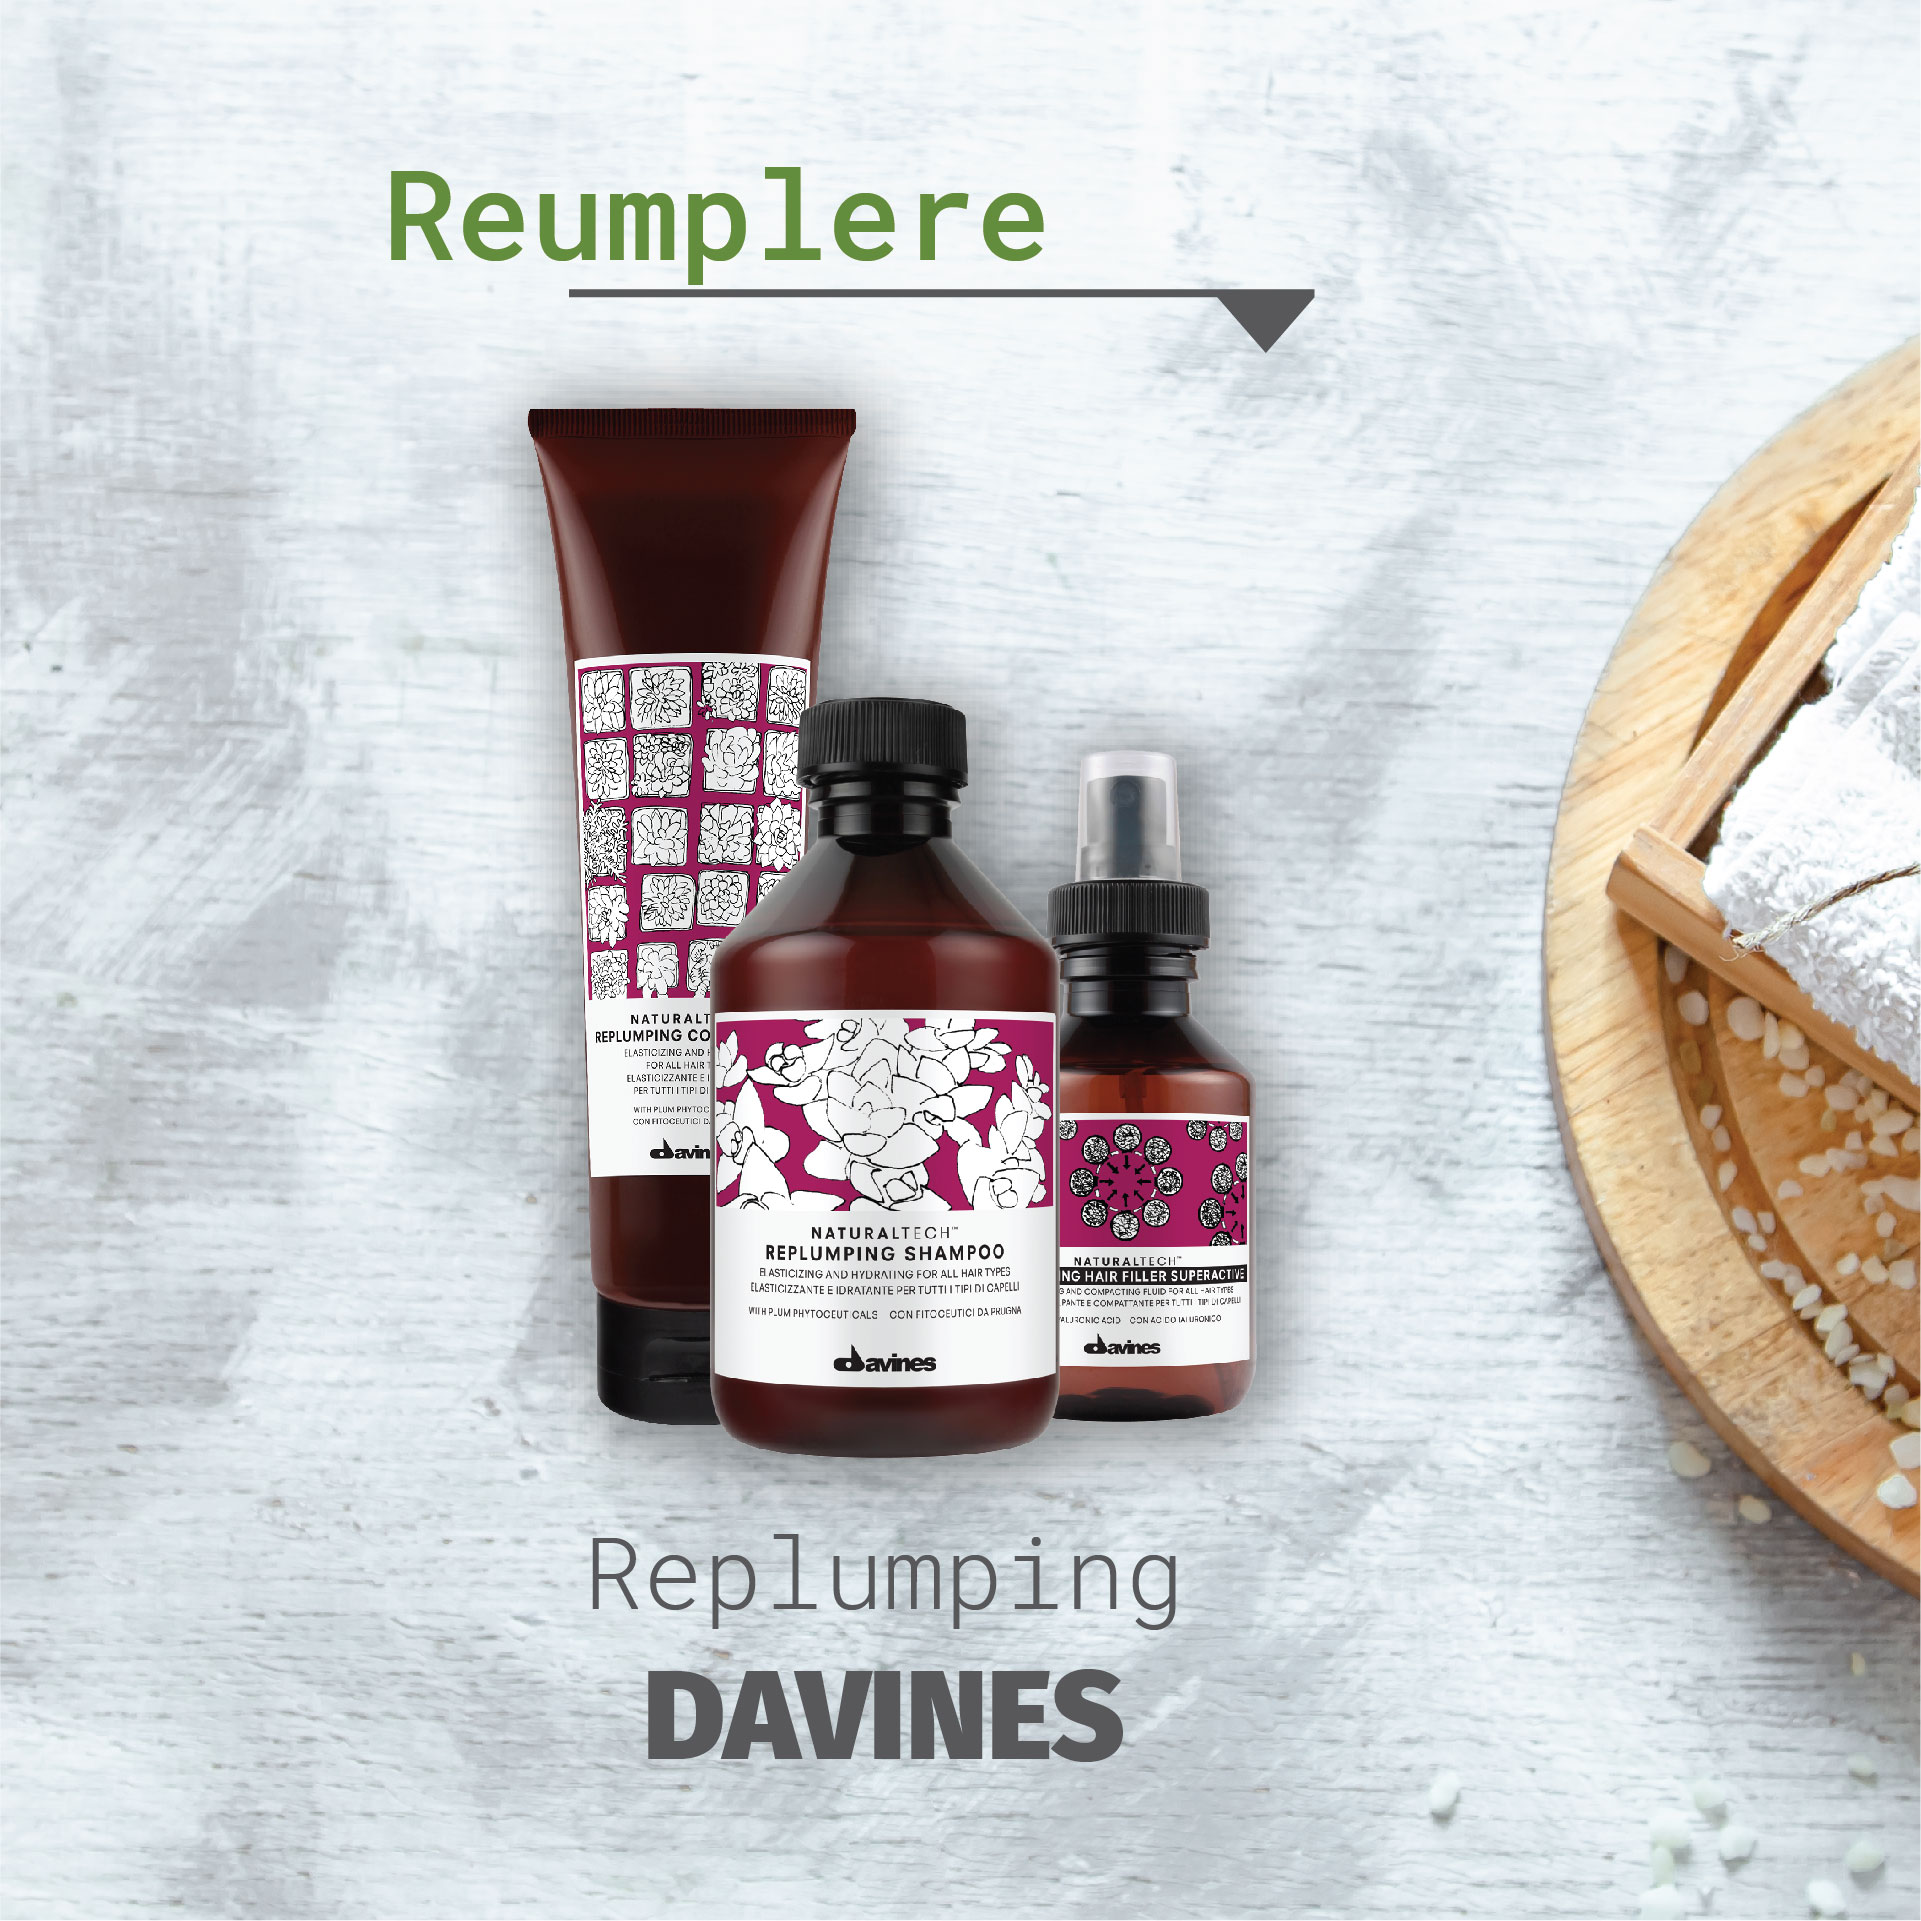 Davines Replumping reumplere-190-220le